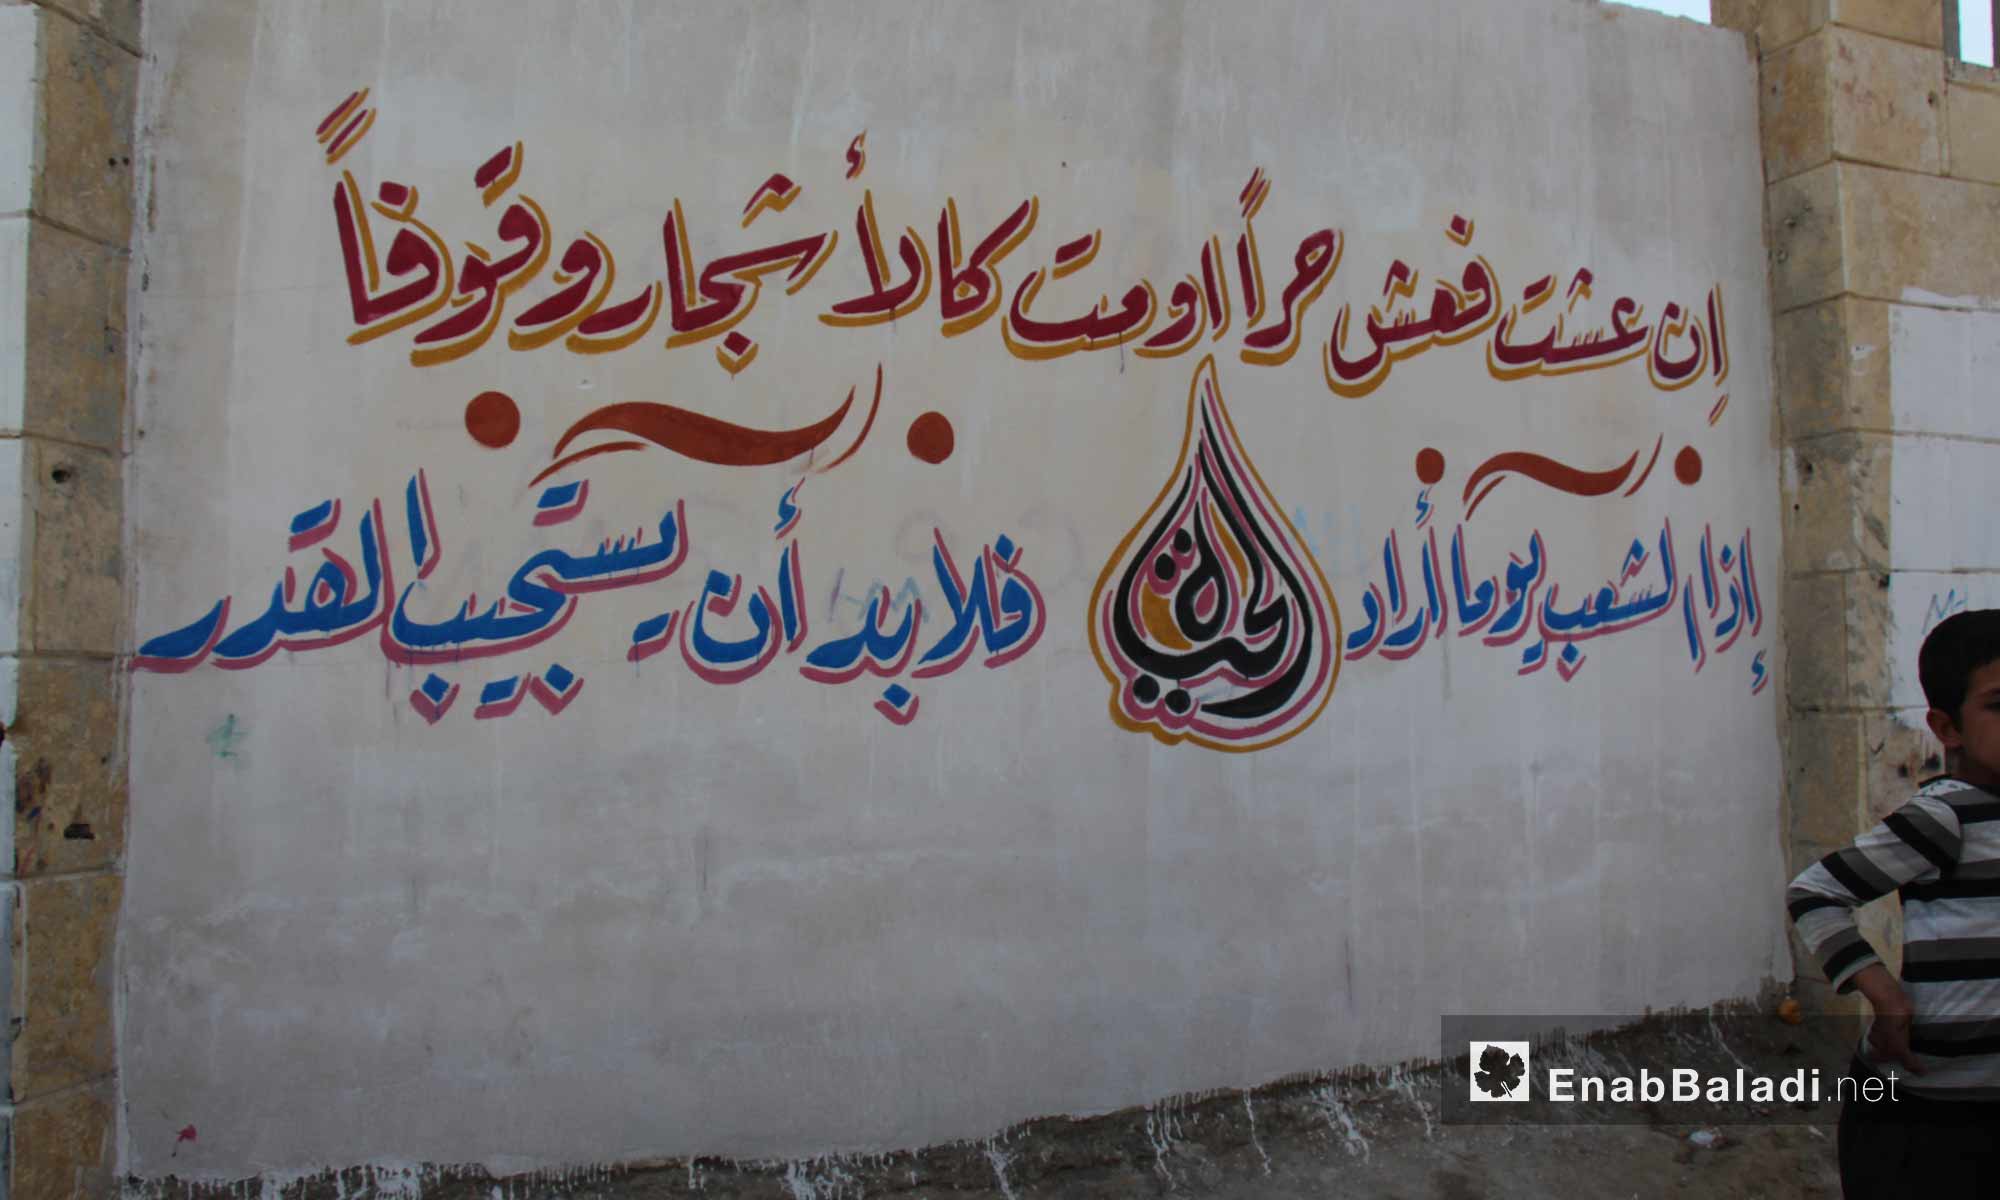 أبيات من الشعر رسمت على جدار في جرابلس شمال حلب - تشرين الثاني 2016 (عنب بلدي)